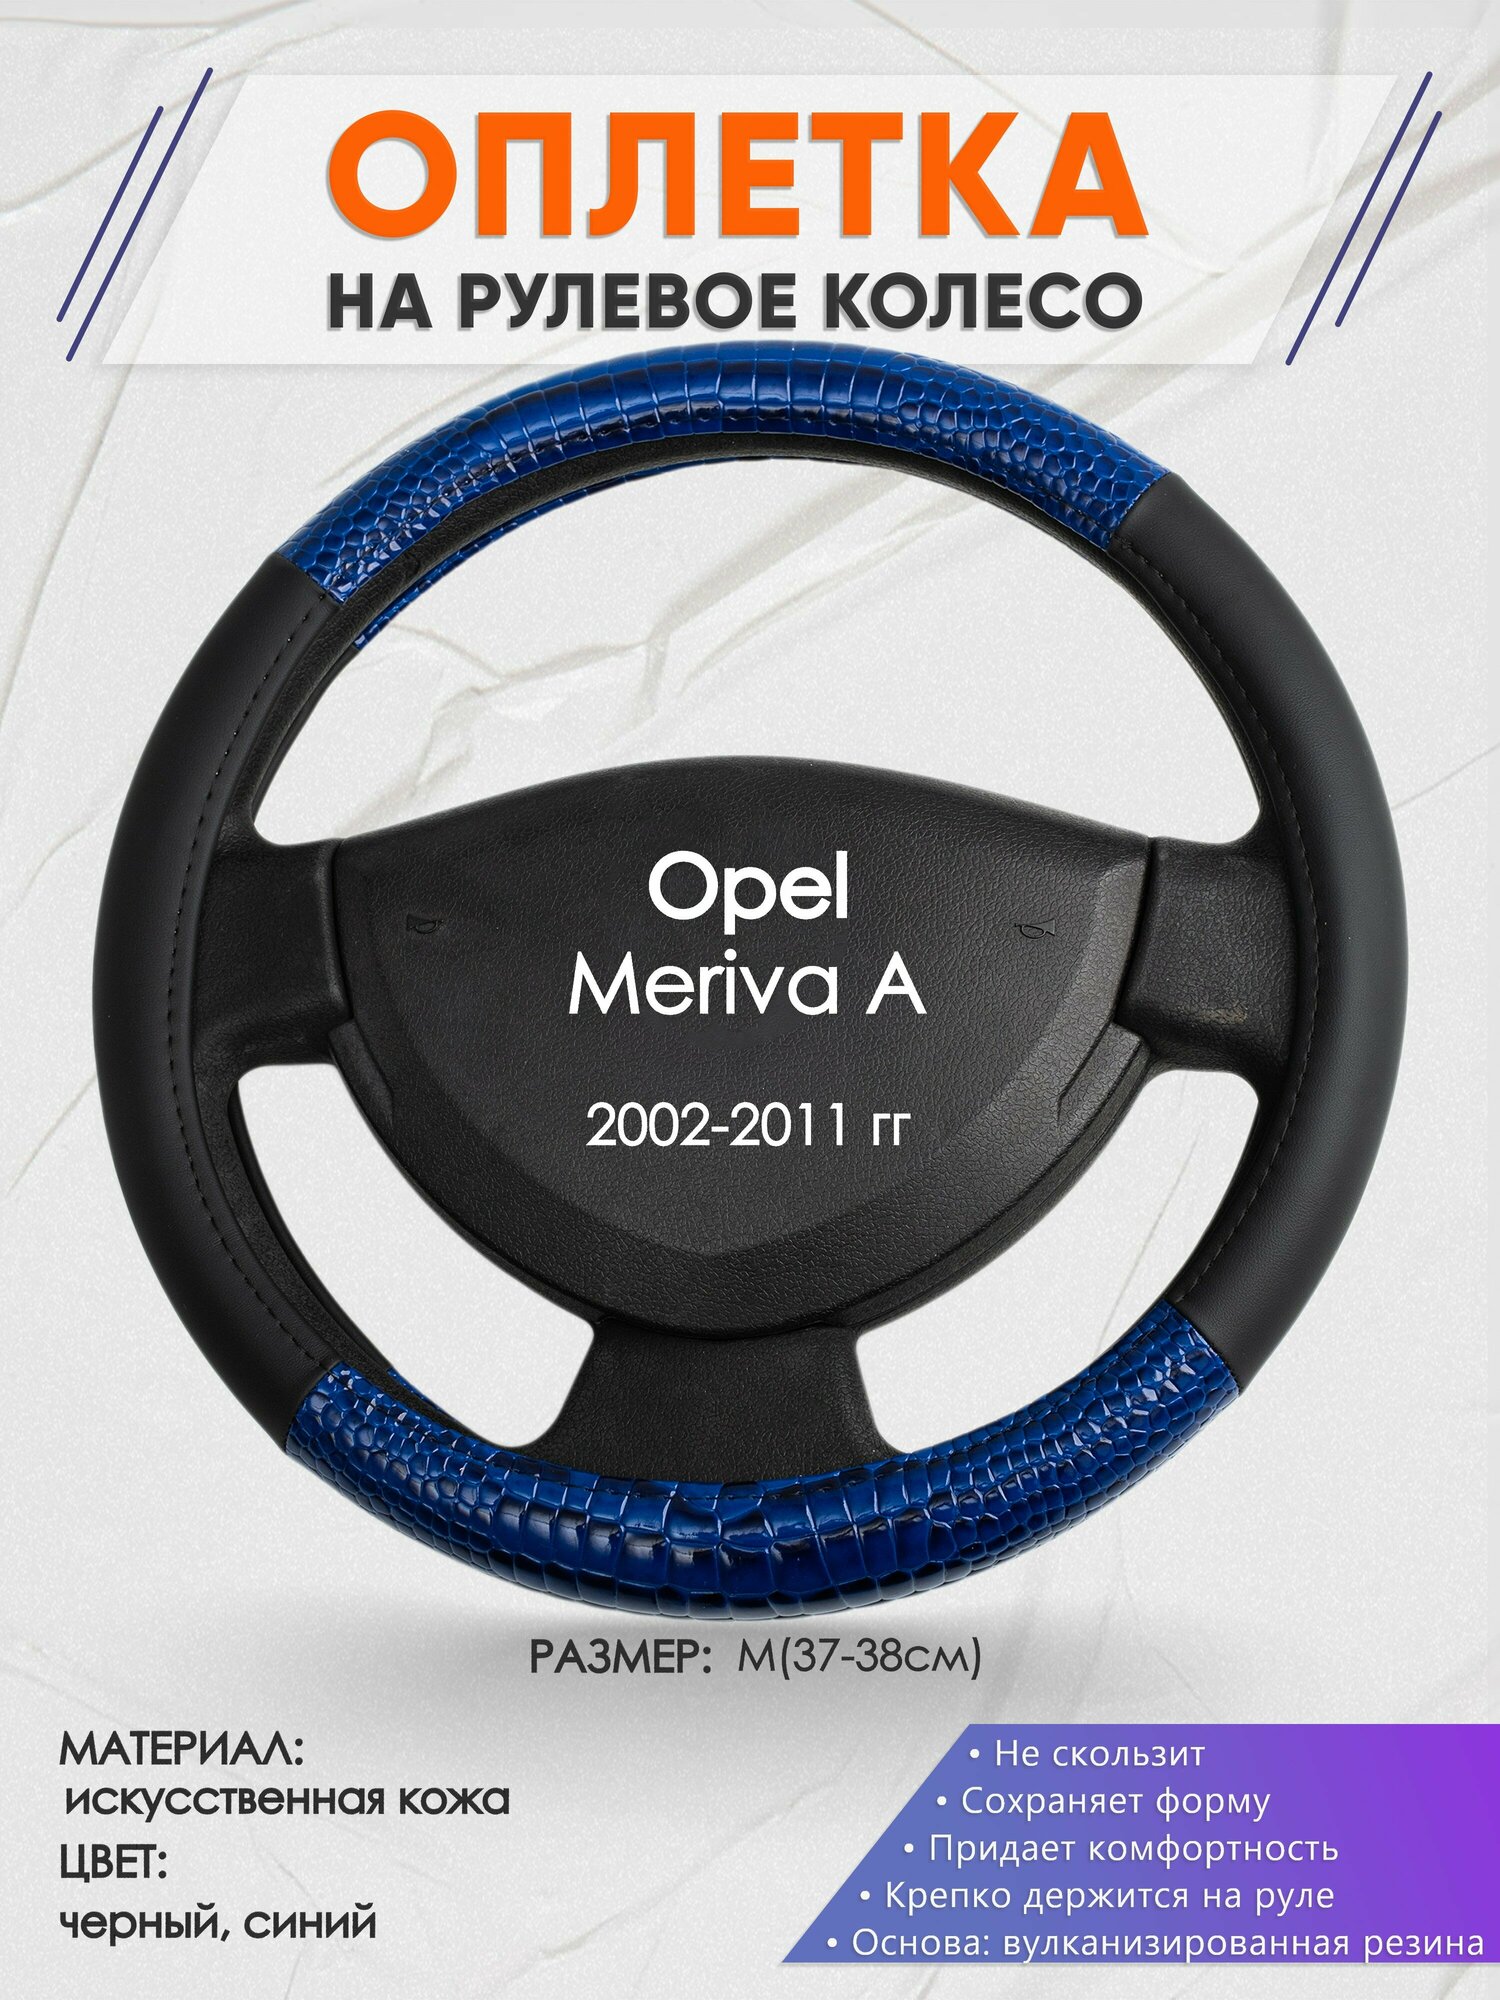 Оплетка на руль для Opel Meriva A(Опель Мерива А) 2002-2011, M(37-38см), Искусственная кожа 82